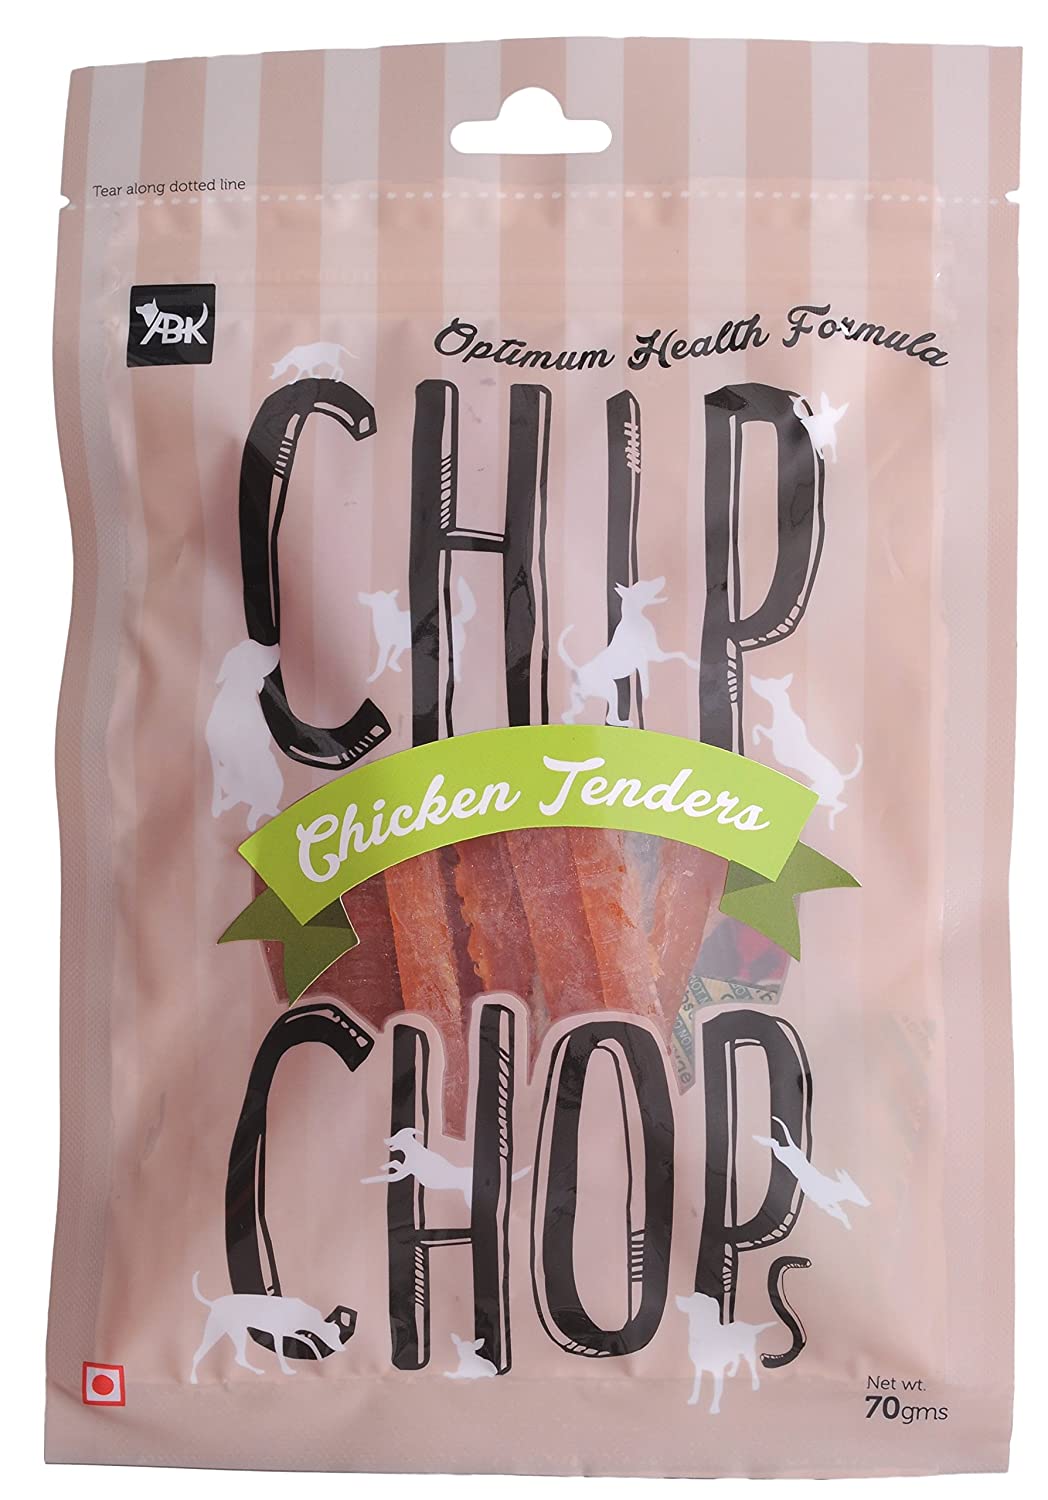 Chip Chops Chicken Tenders Slice